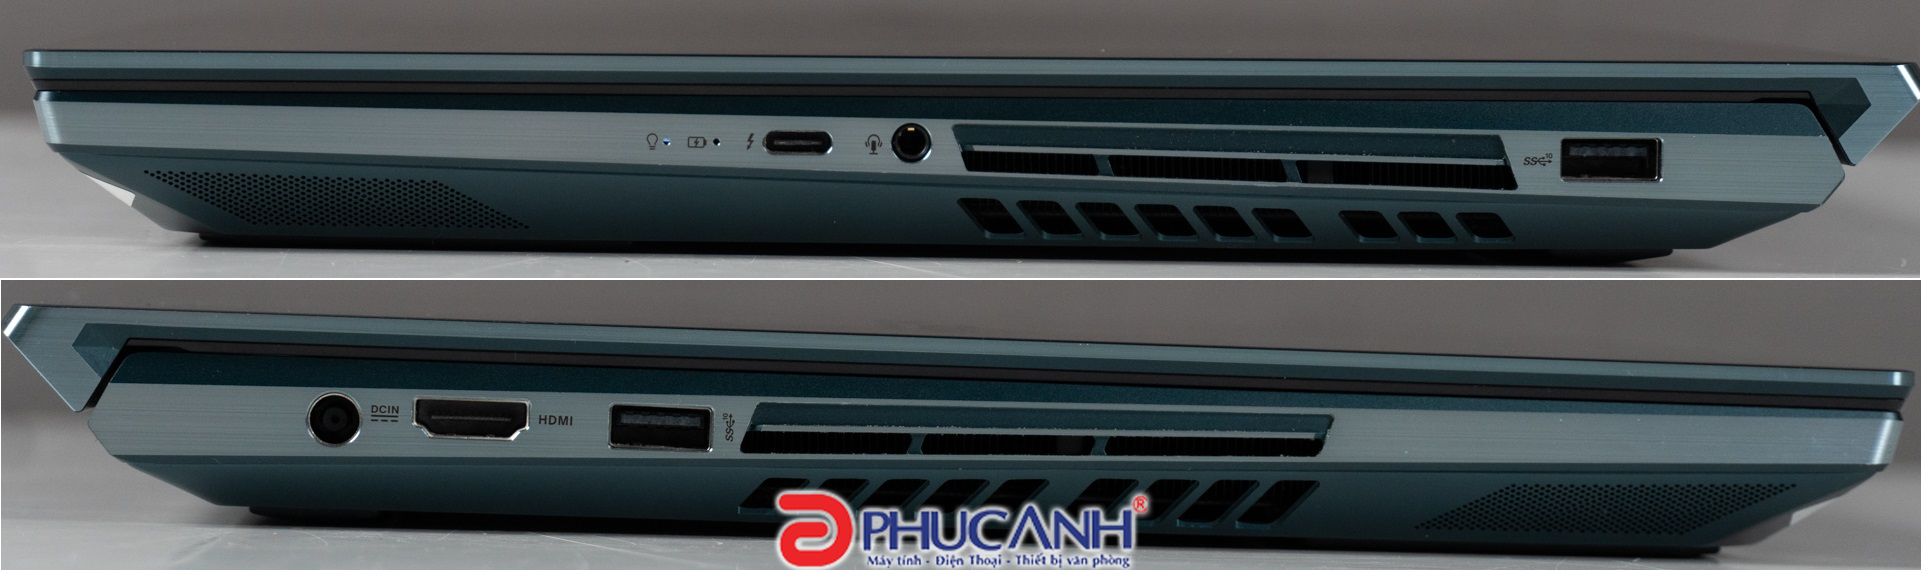 đánh giá Asus Zenbook UX581GV-H2029 